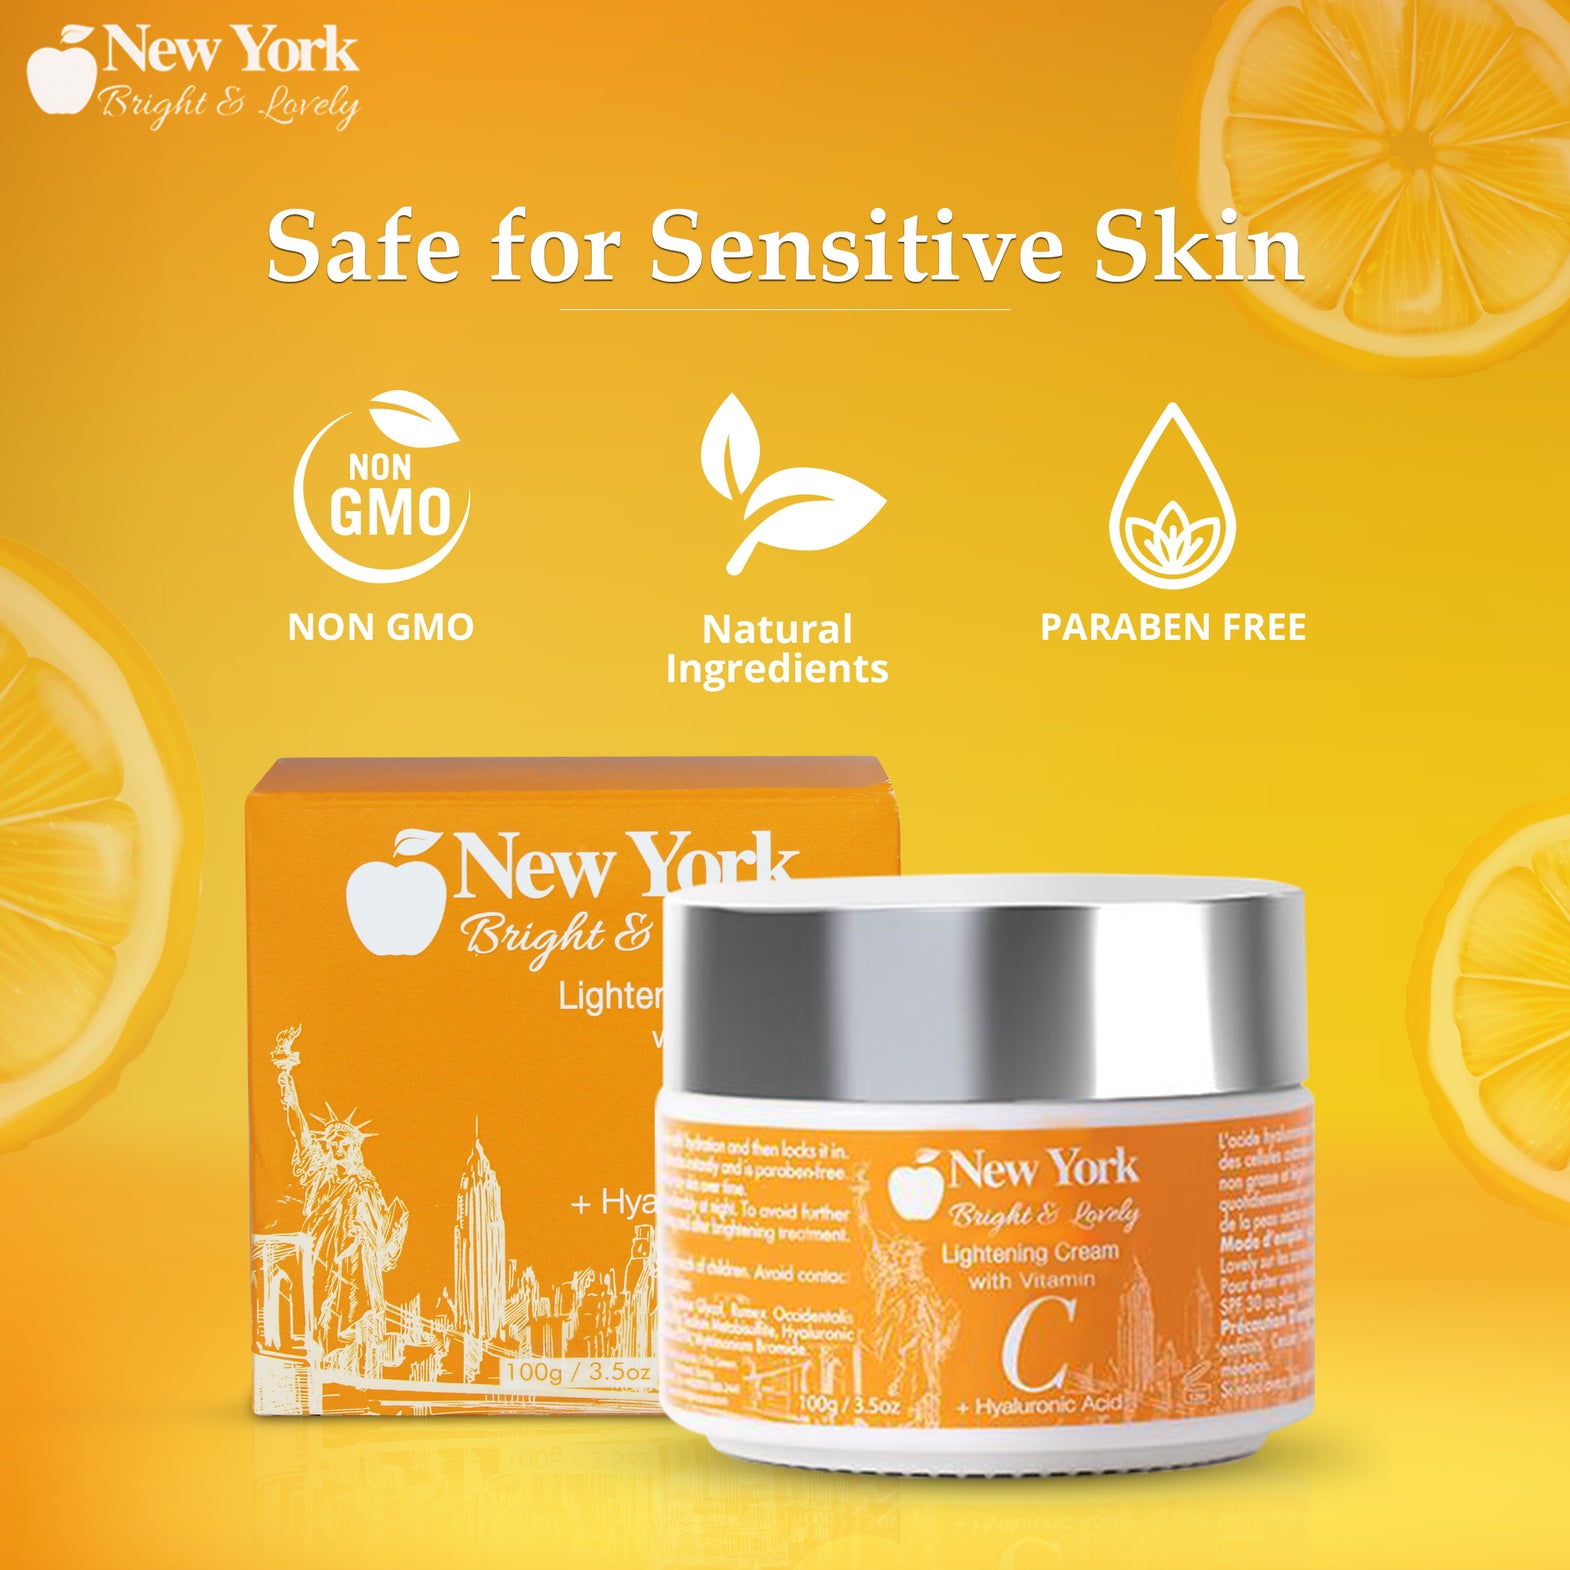 New York Bright & Lovely Lightening Cream With Vitamin C + Hyaluronic Acid 100ml